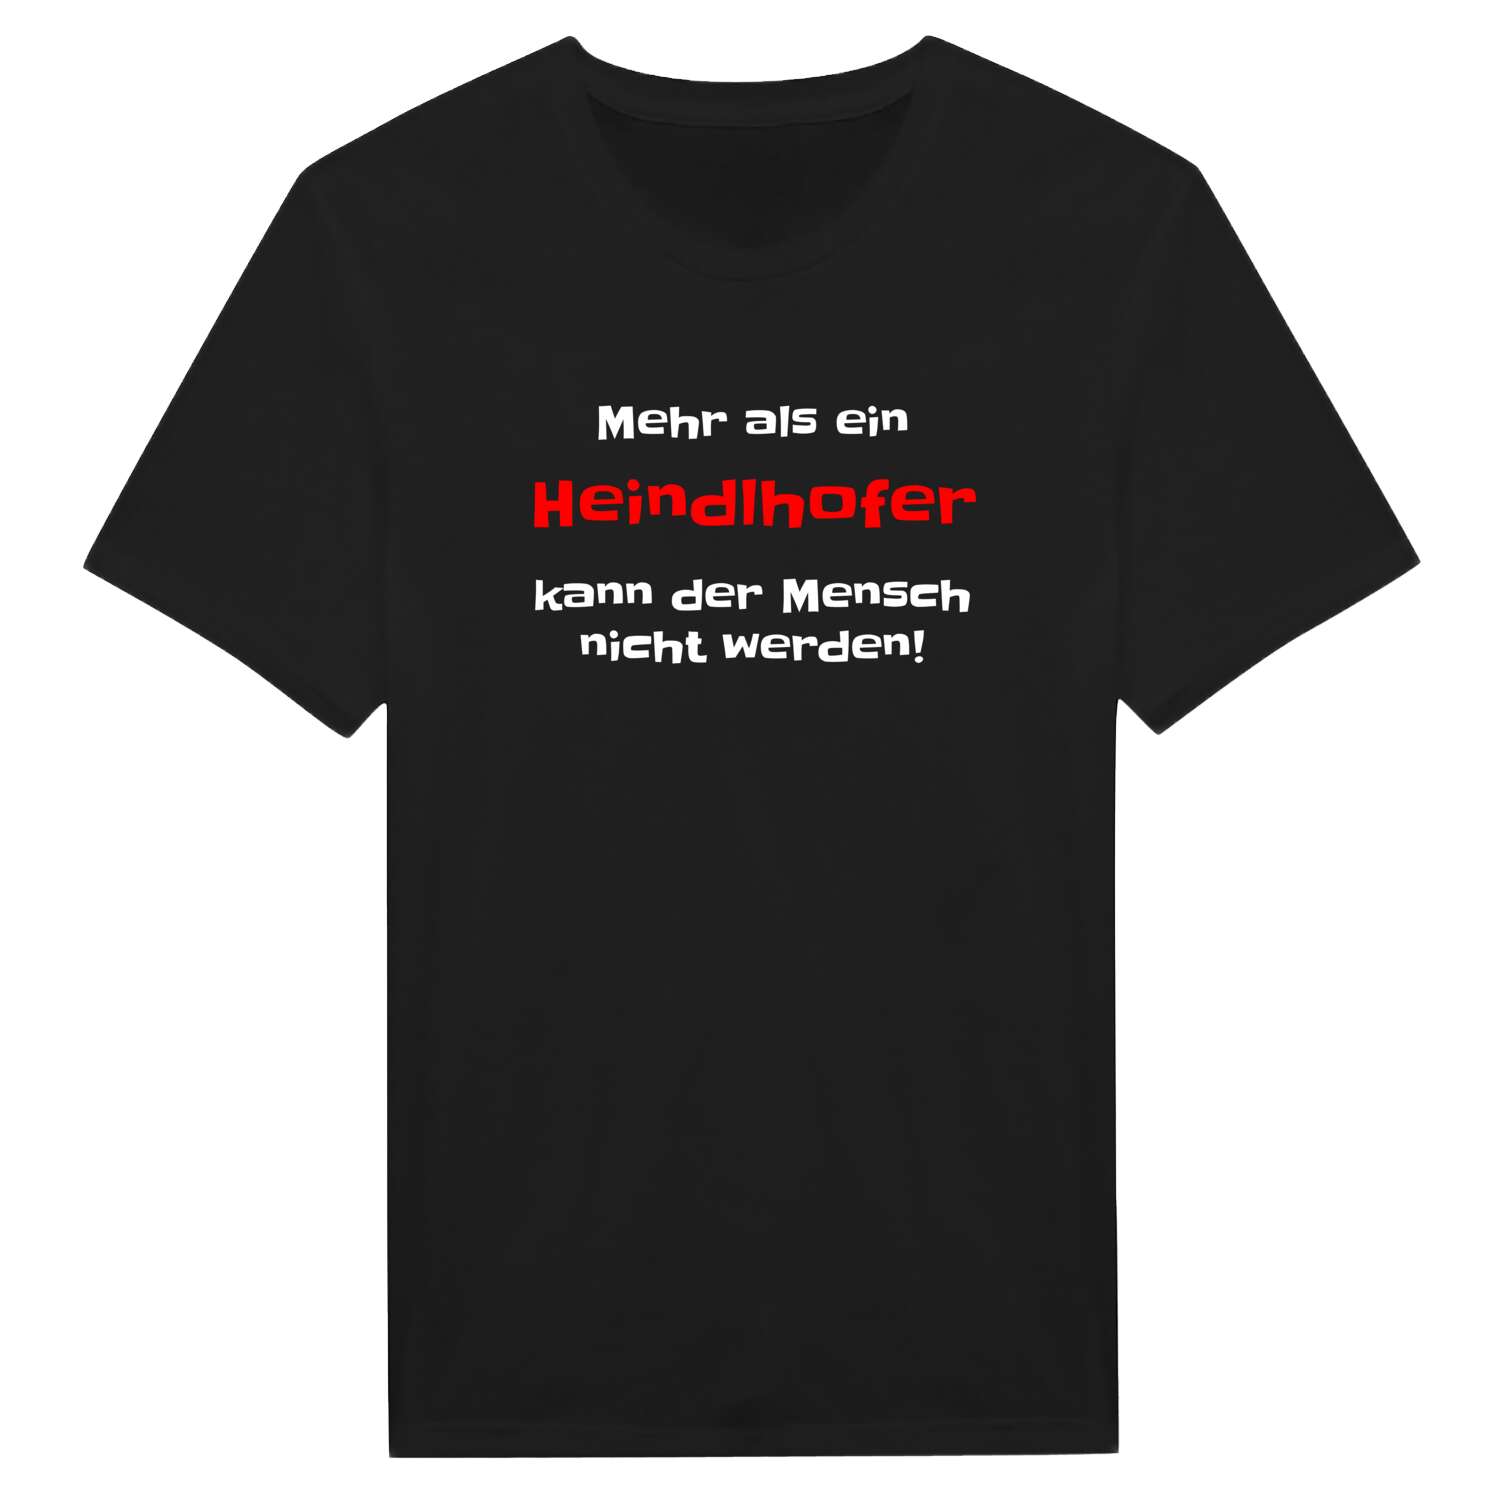 Heindlhof T-Shirt »Mehr als ein«